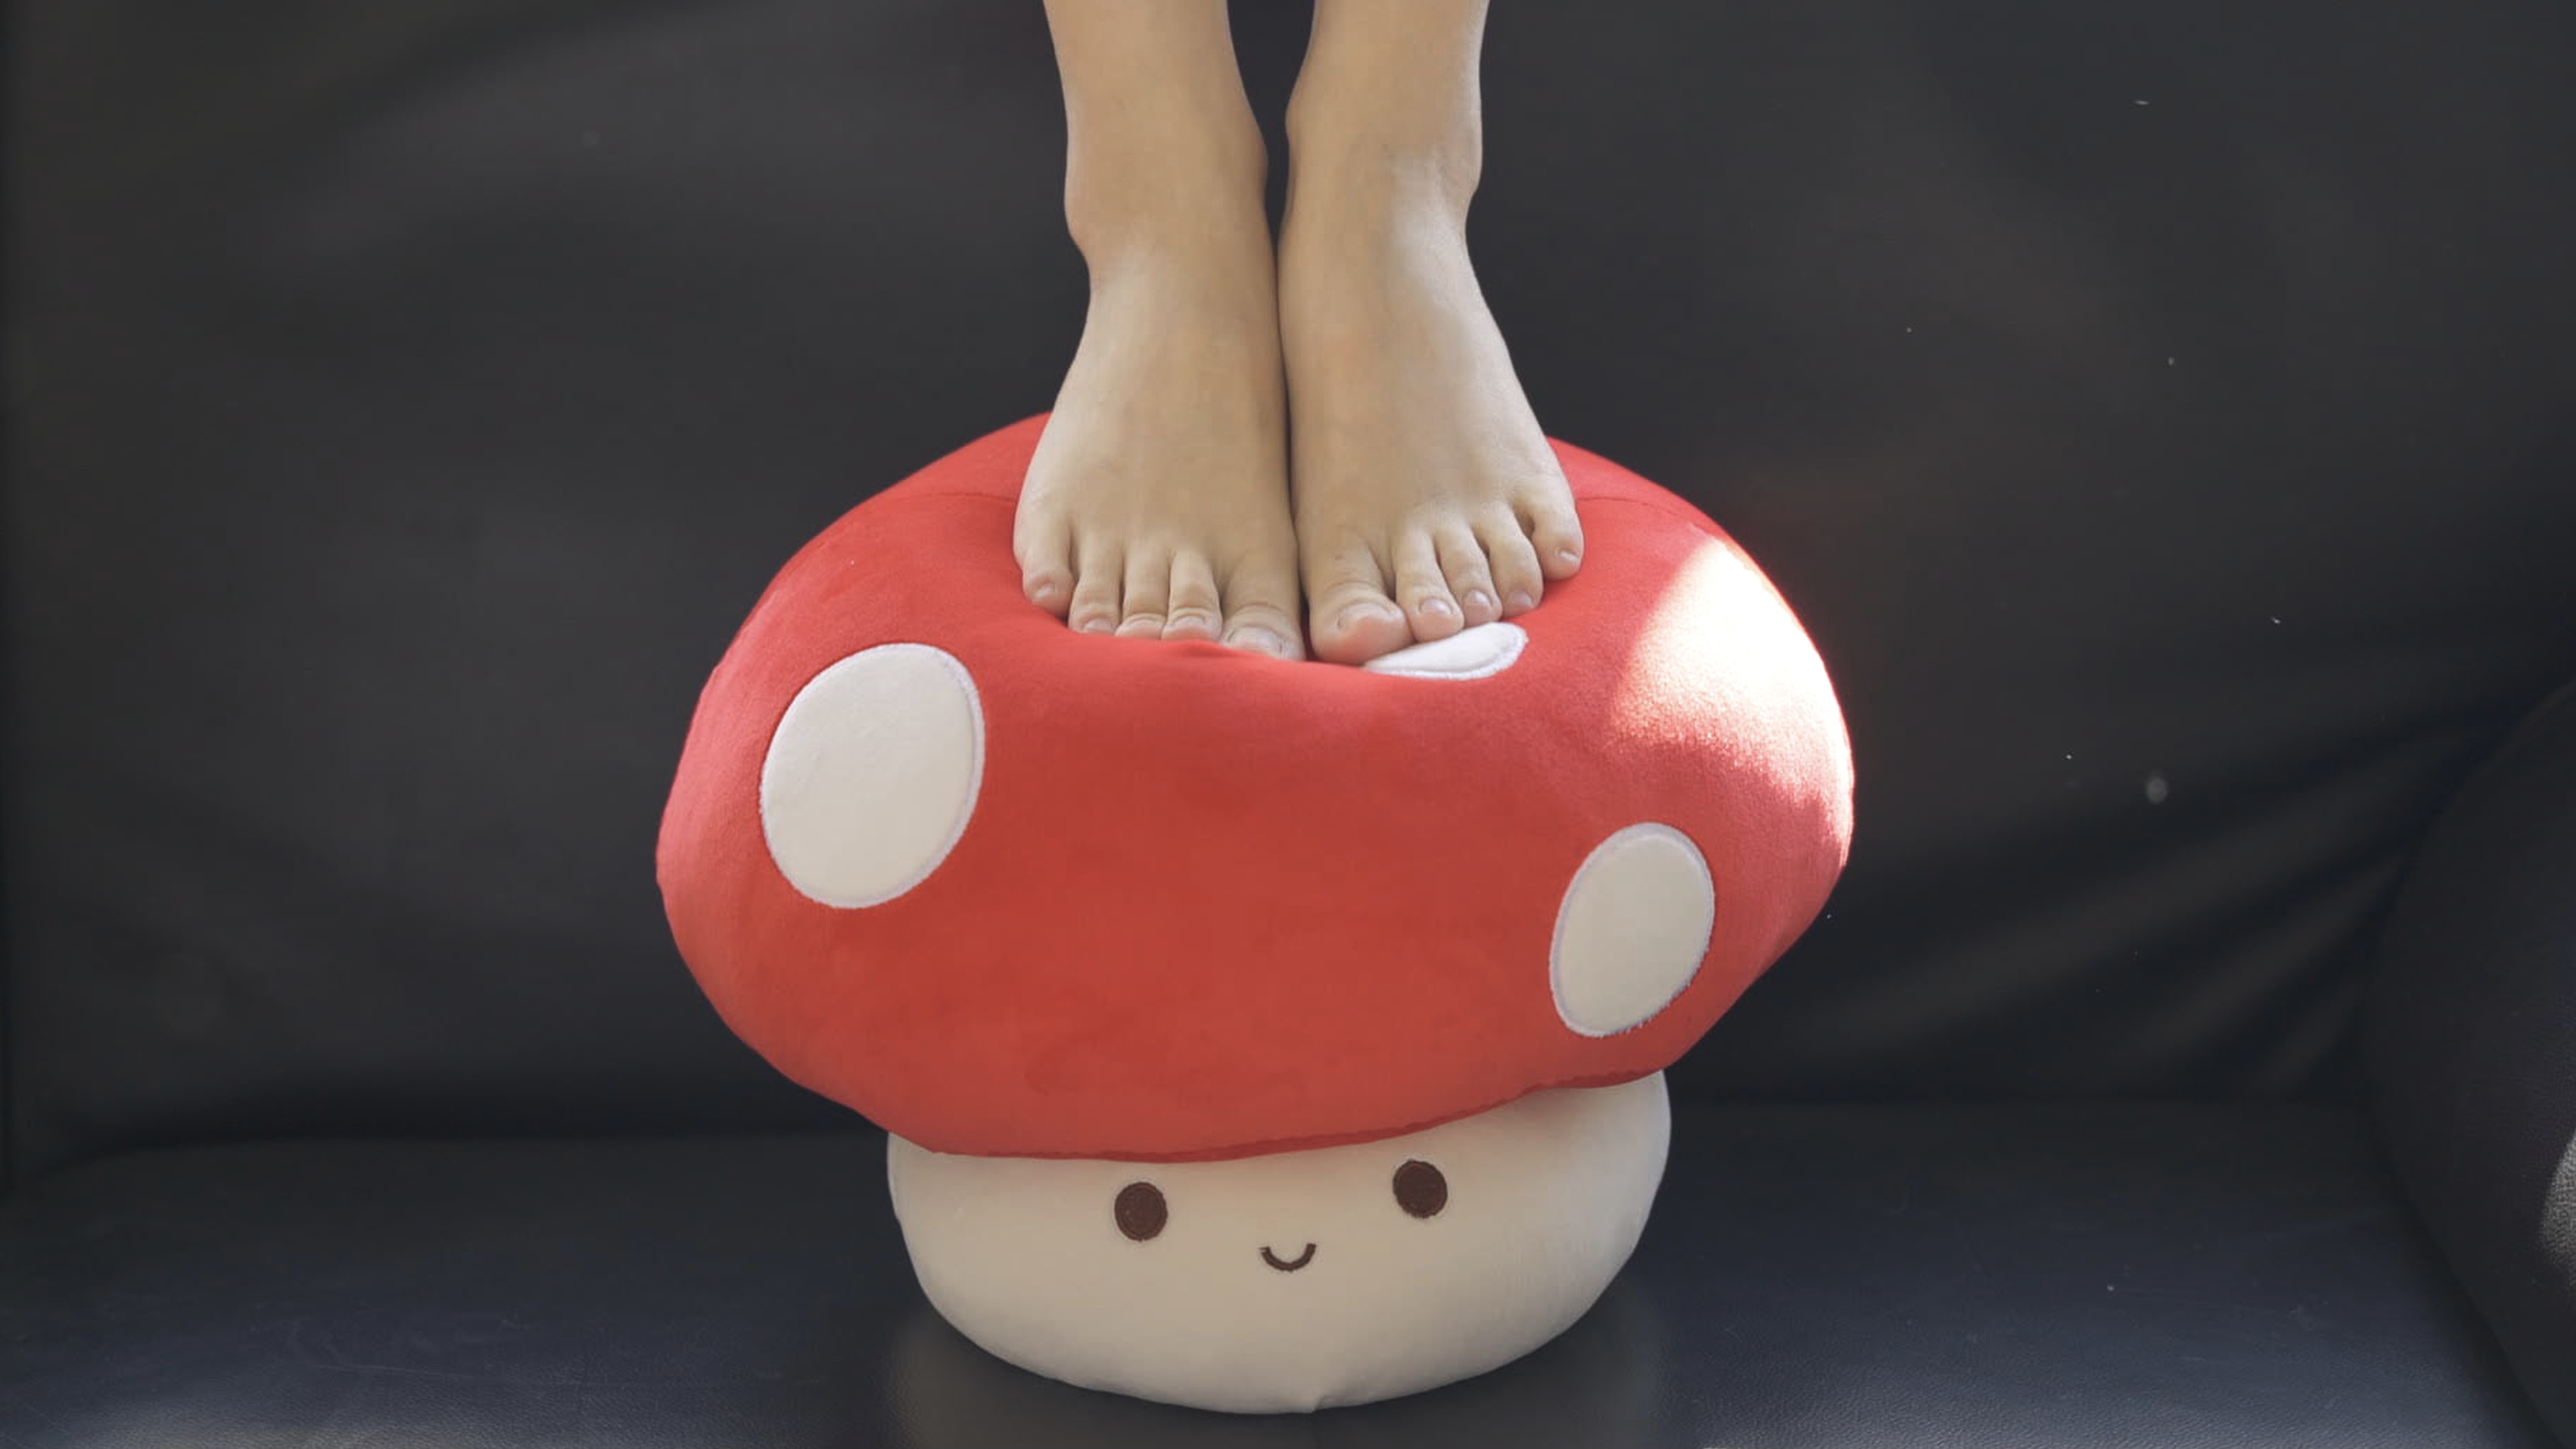 Women Chinese Feet Mushroom 1 Up 3682x2071